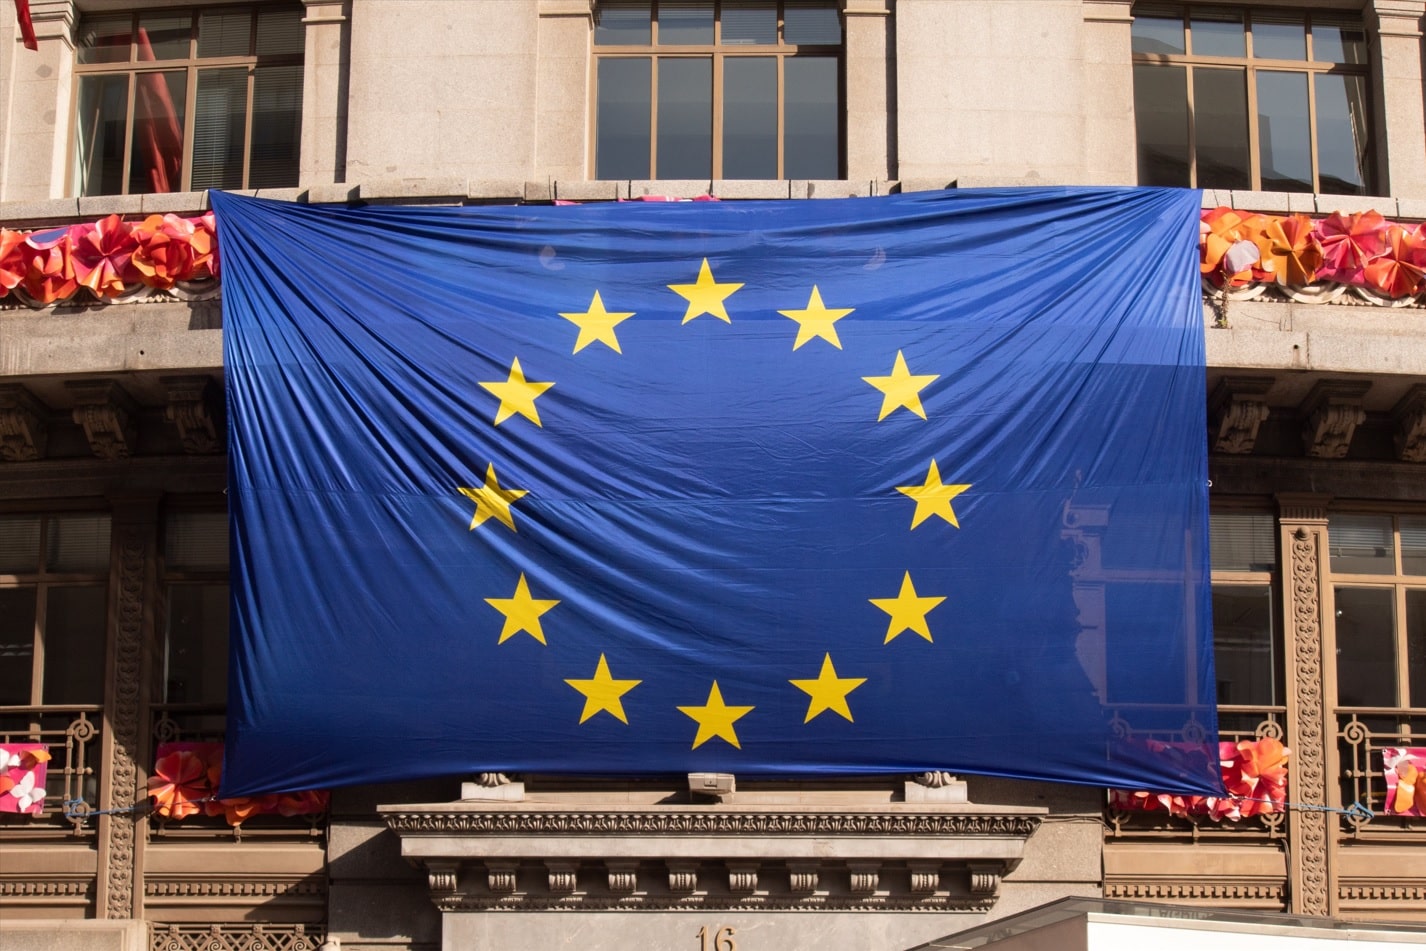 Bandera de la unión europea colgada en una fachada de un edificio.